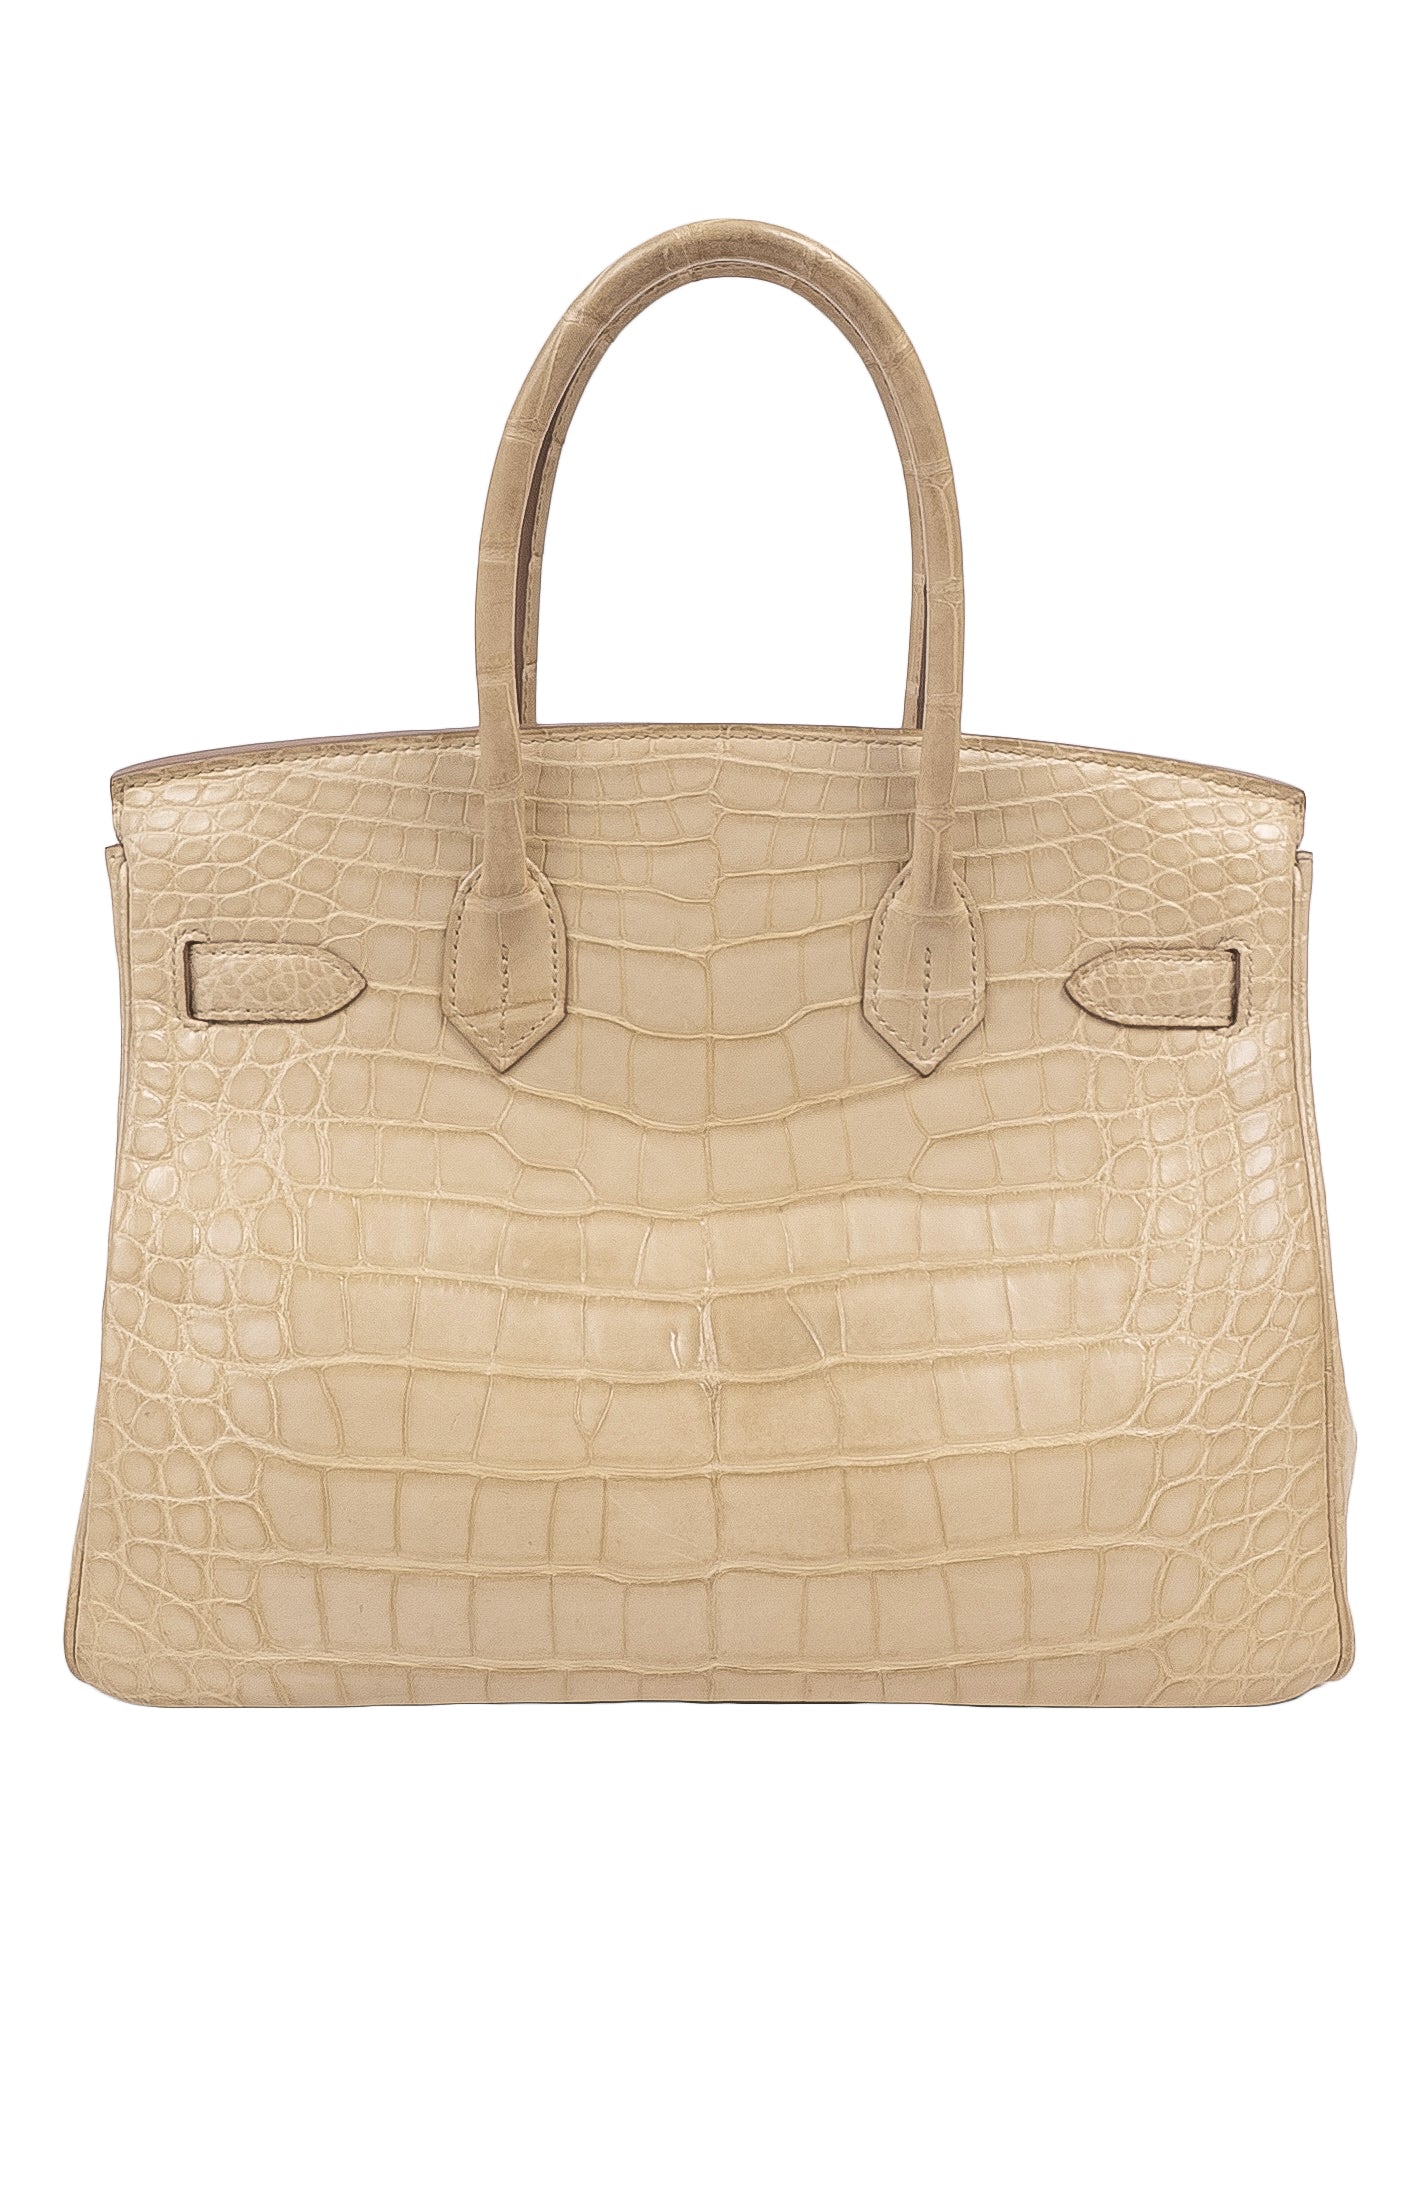 Sizes for Hermes Birkin Handbags 